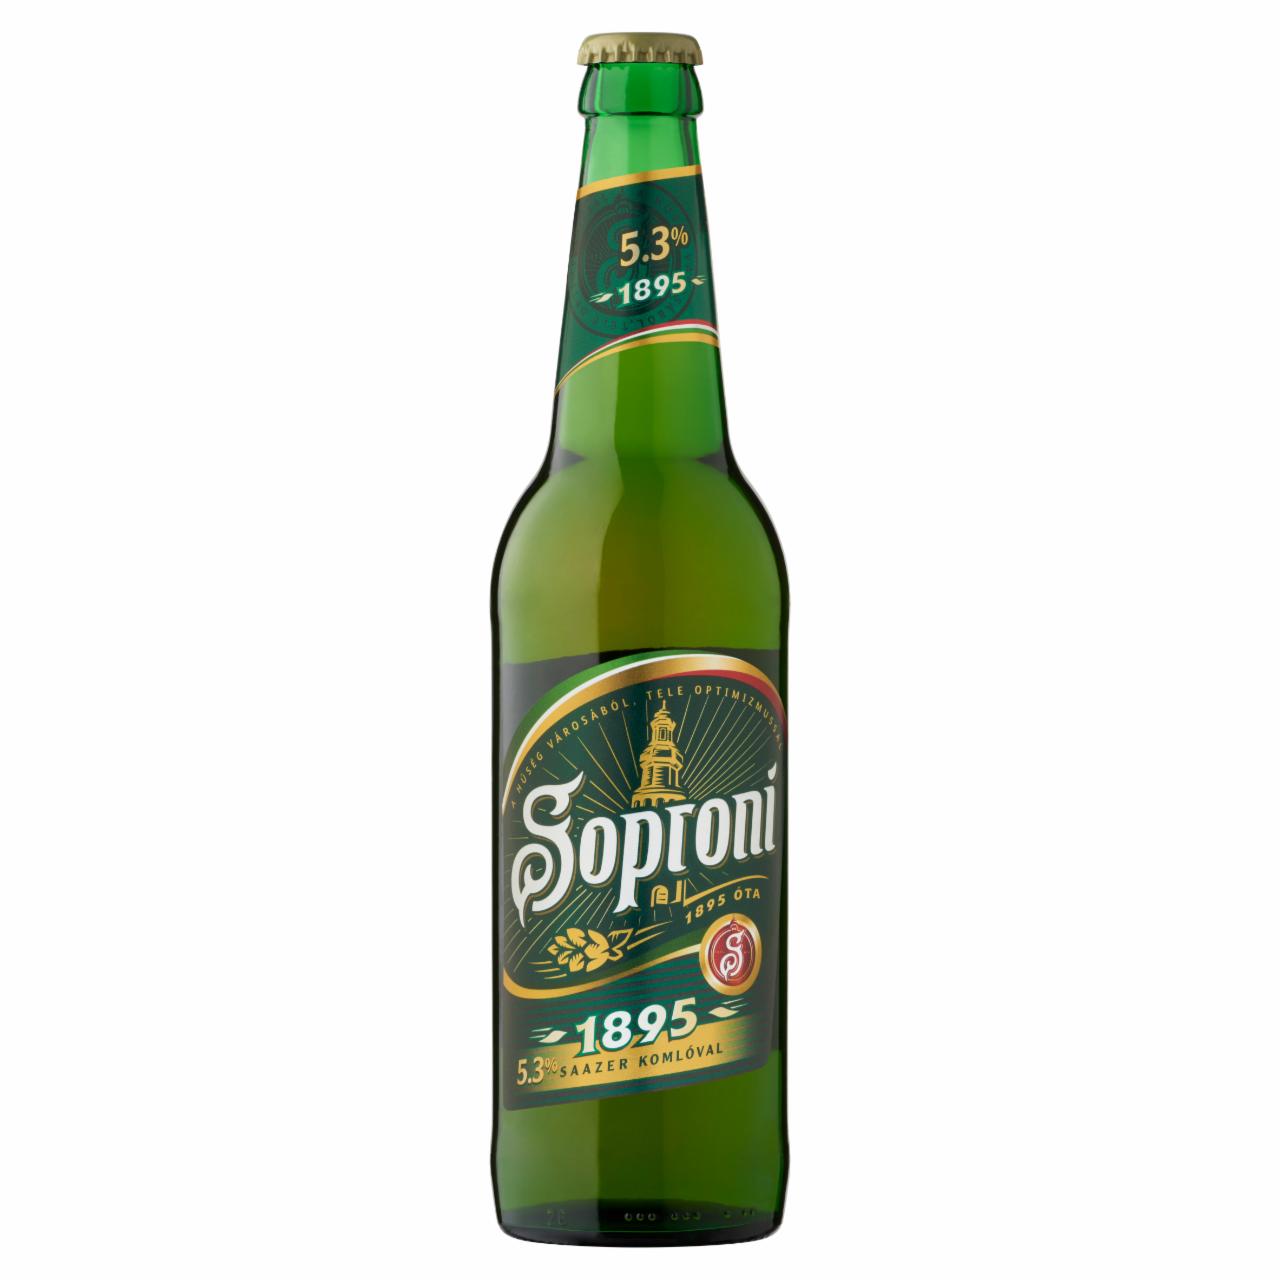 Képek - Soproni 1895 minőségi világos sör 5,3% 0,5 l üveg